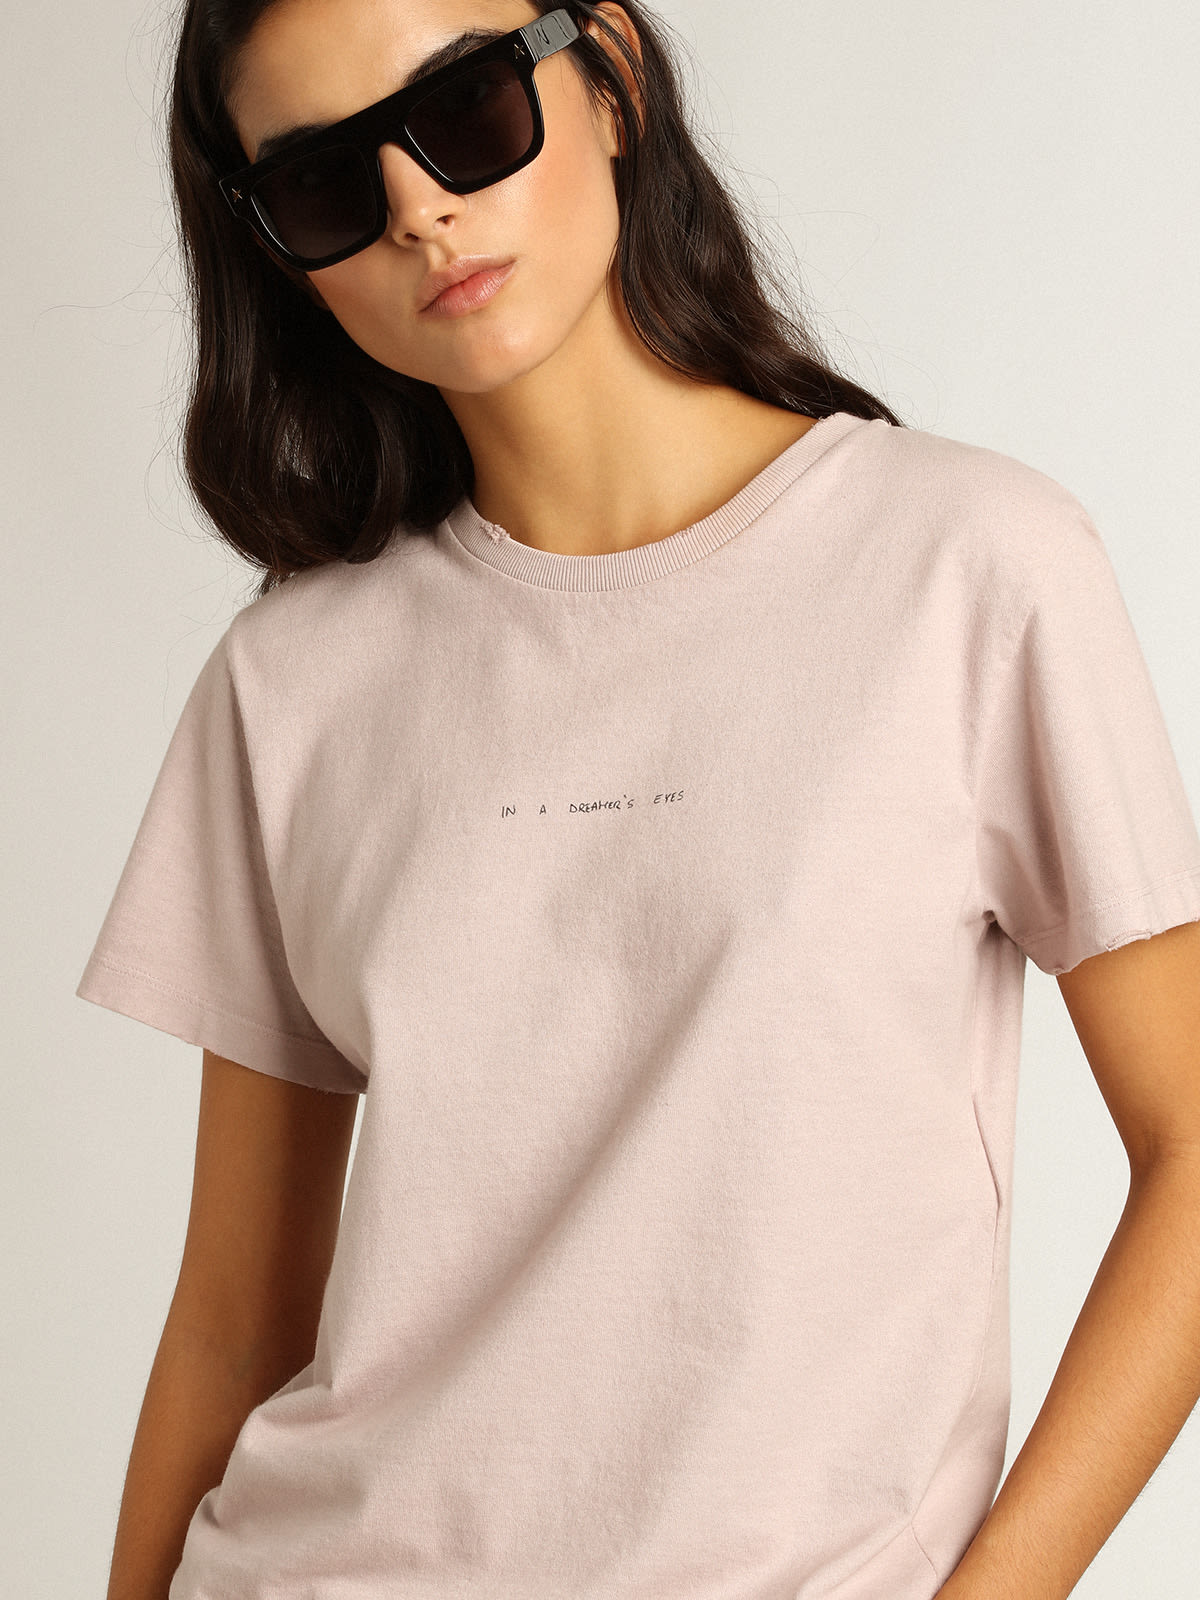 Golden Goose - T-shirt rose pâle avec inscription sur le devant in 